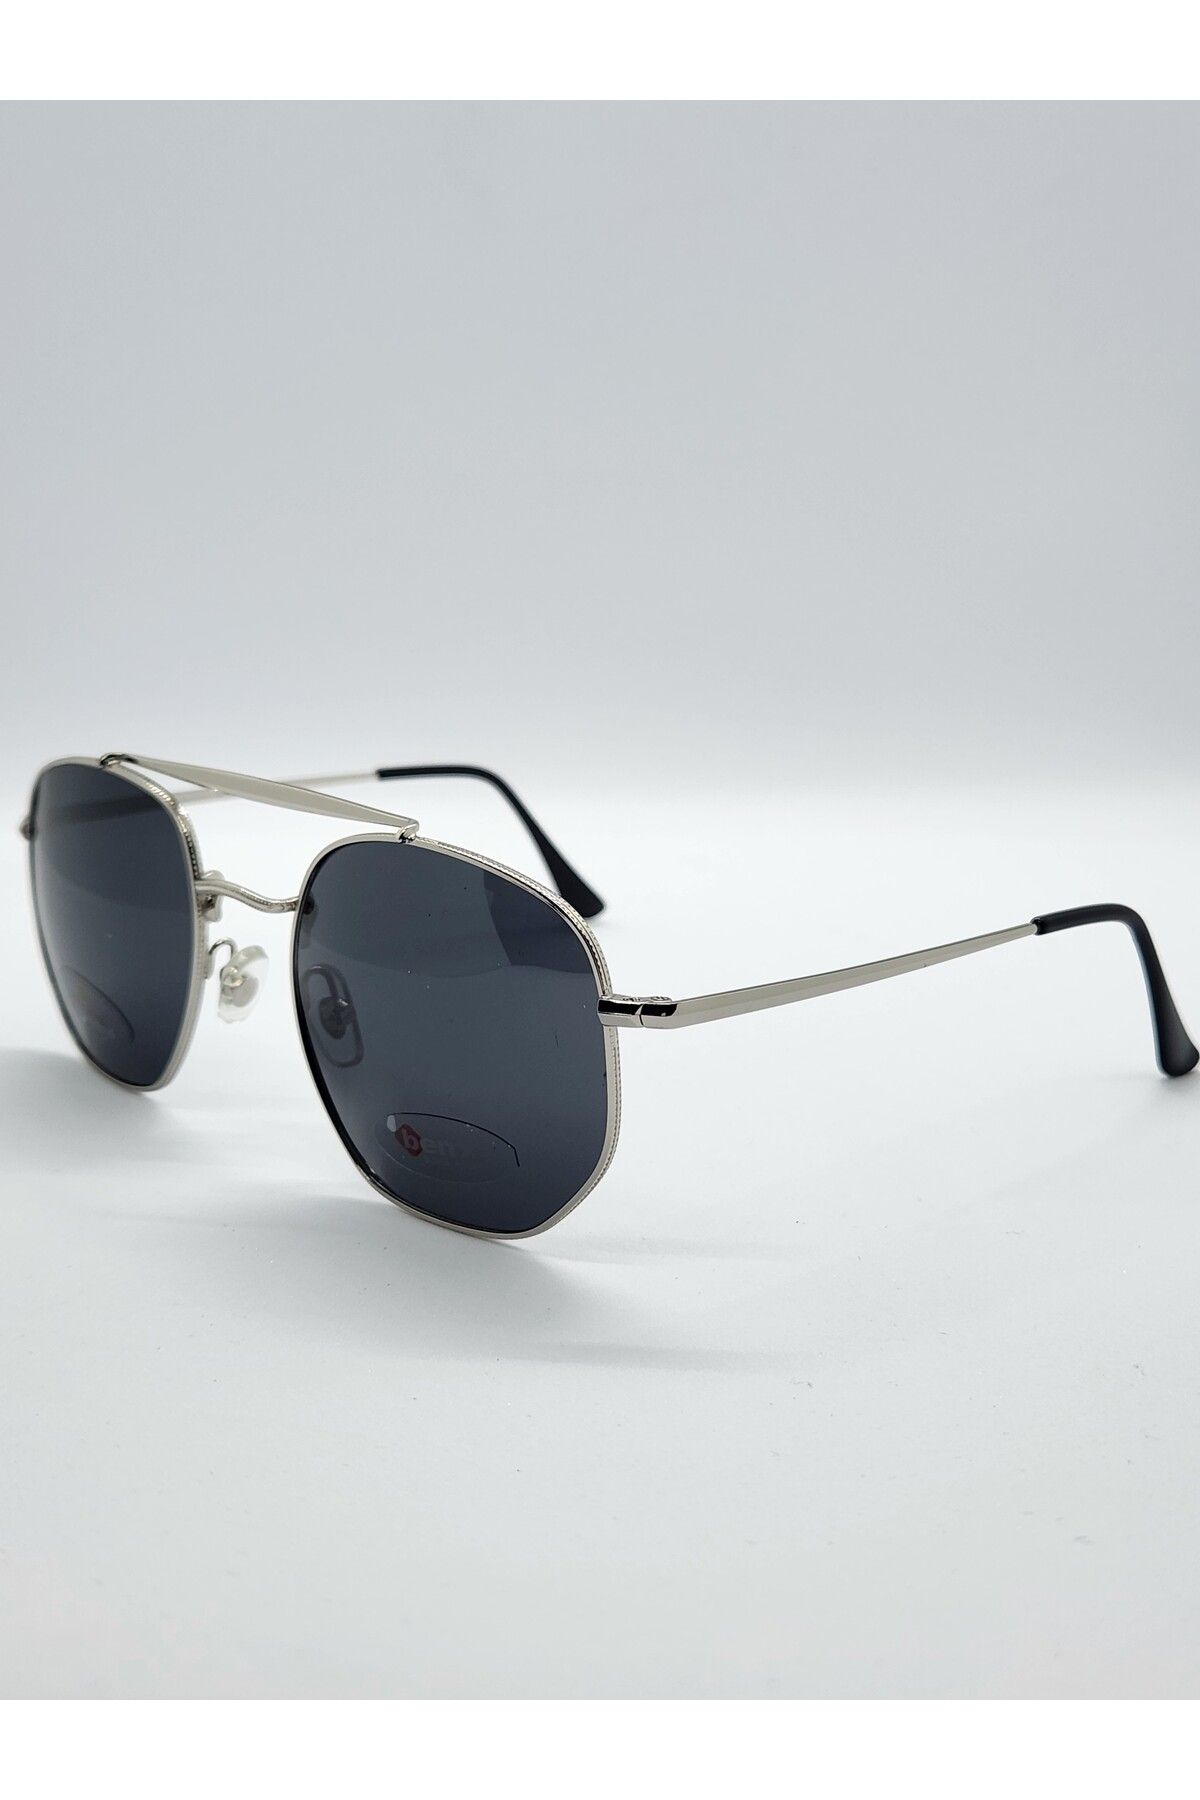 Benx Sunglasses Köprülü Model Metal Unisex Güneş Gözlüğü